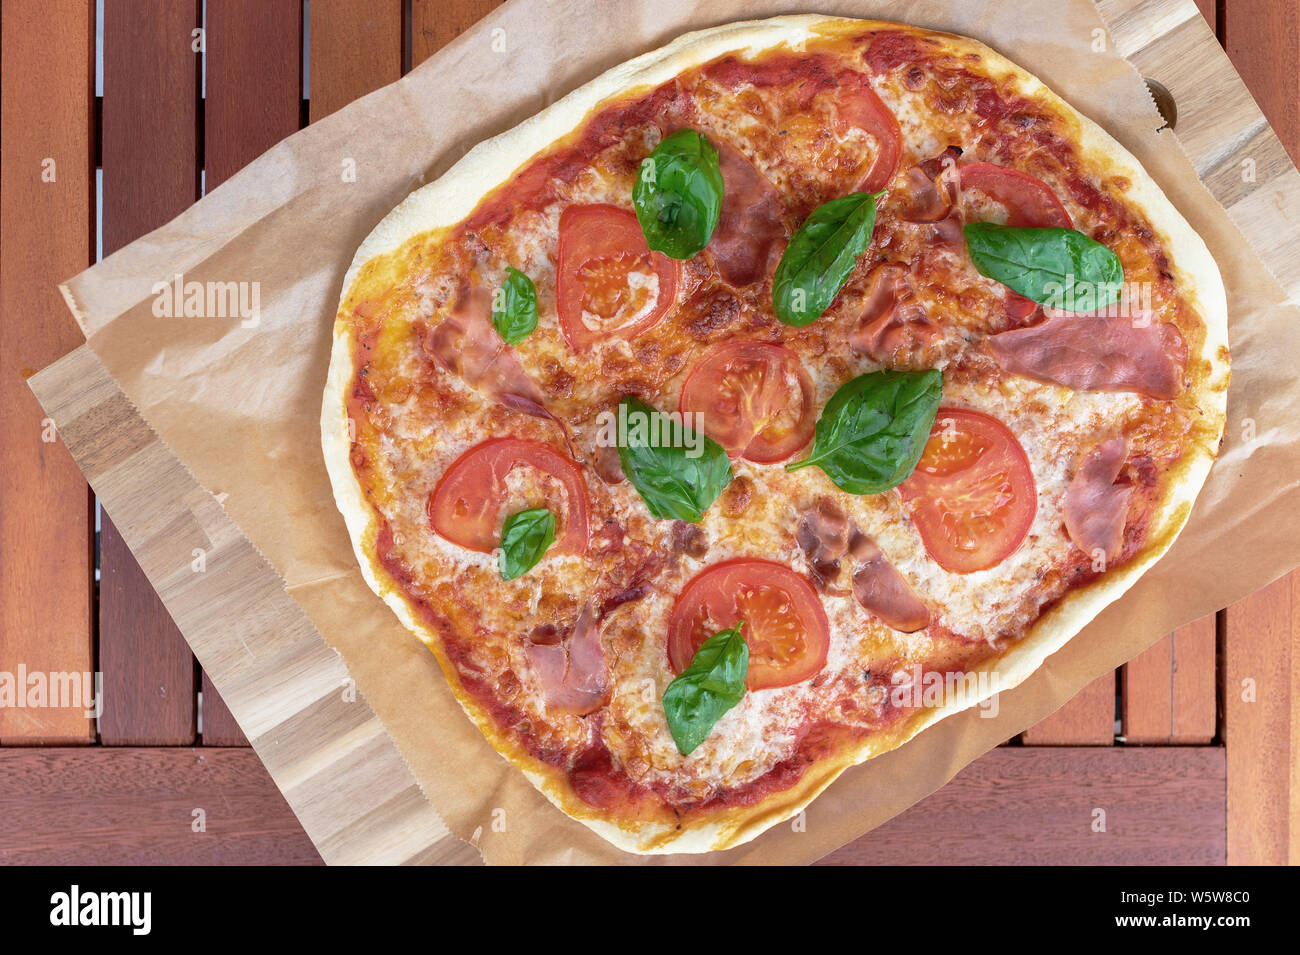 Vue de dessus des pizzas fraîches avec du jambon serrano, des tranches de tomate et de jambon sur table de jardin en bois Banque D'Images